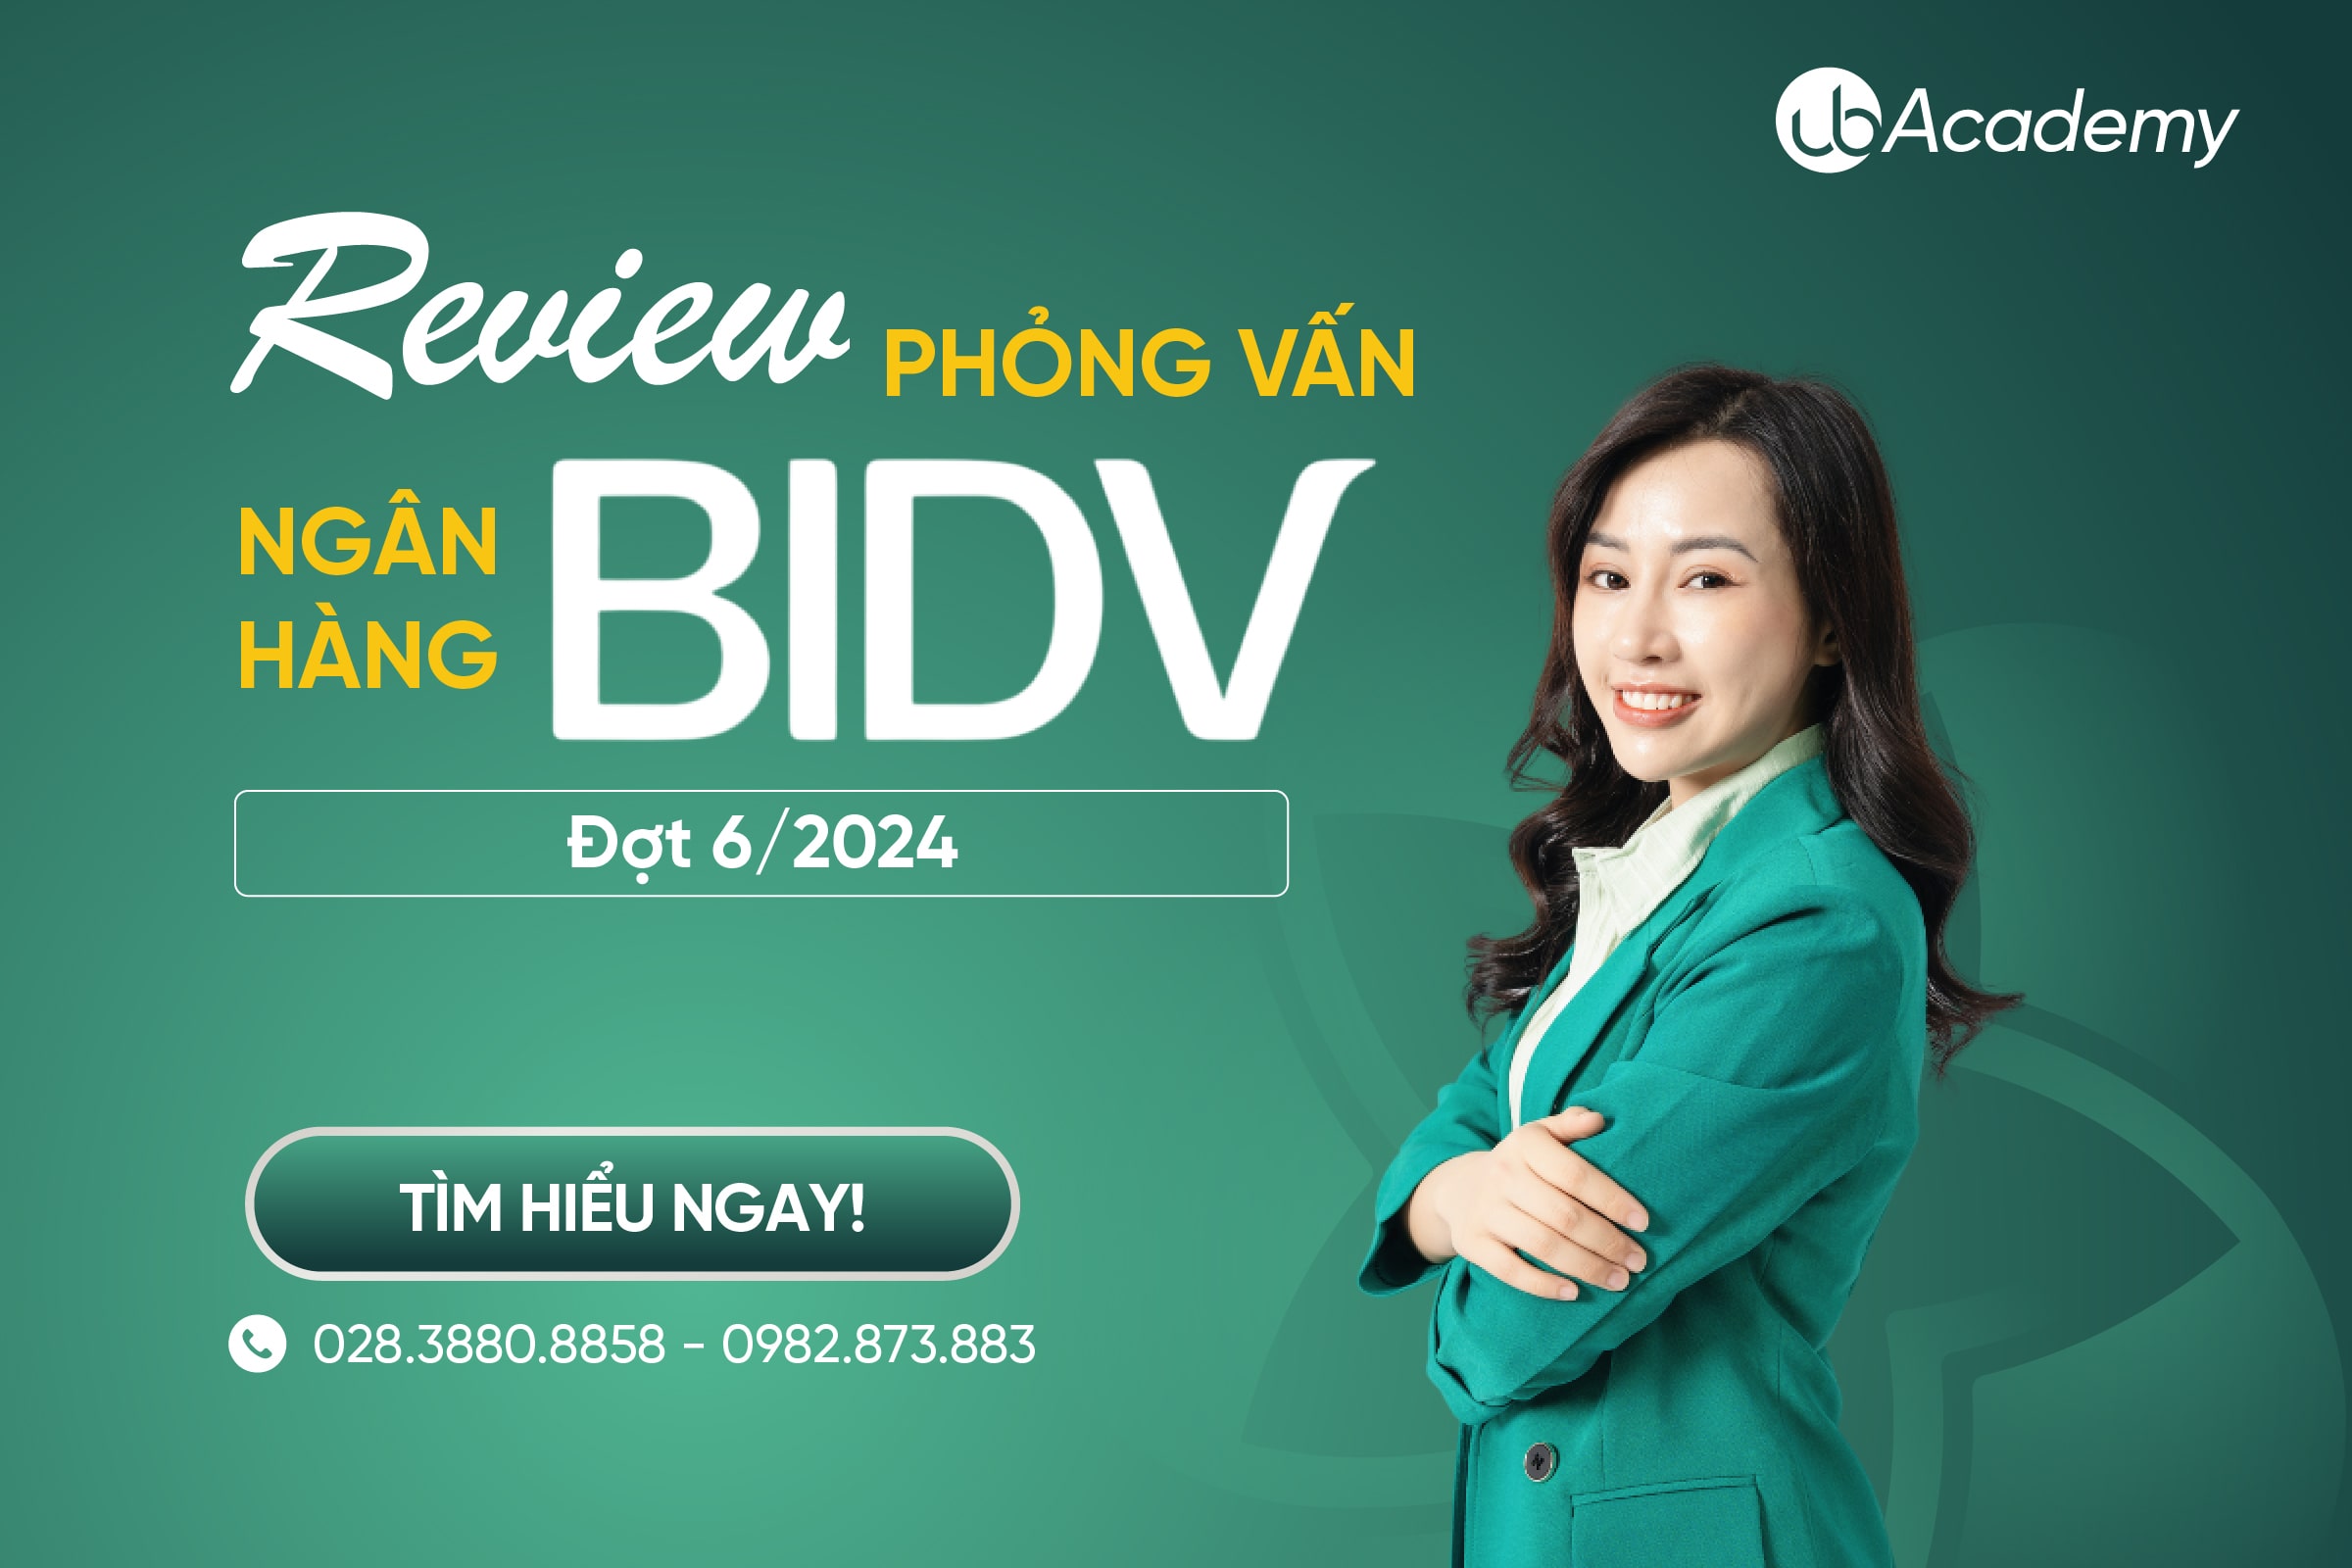 Review phỏng vấn BIDV đợt 6/2024